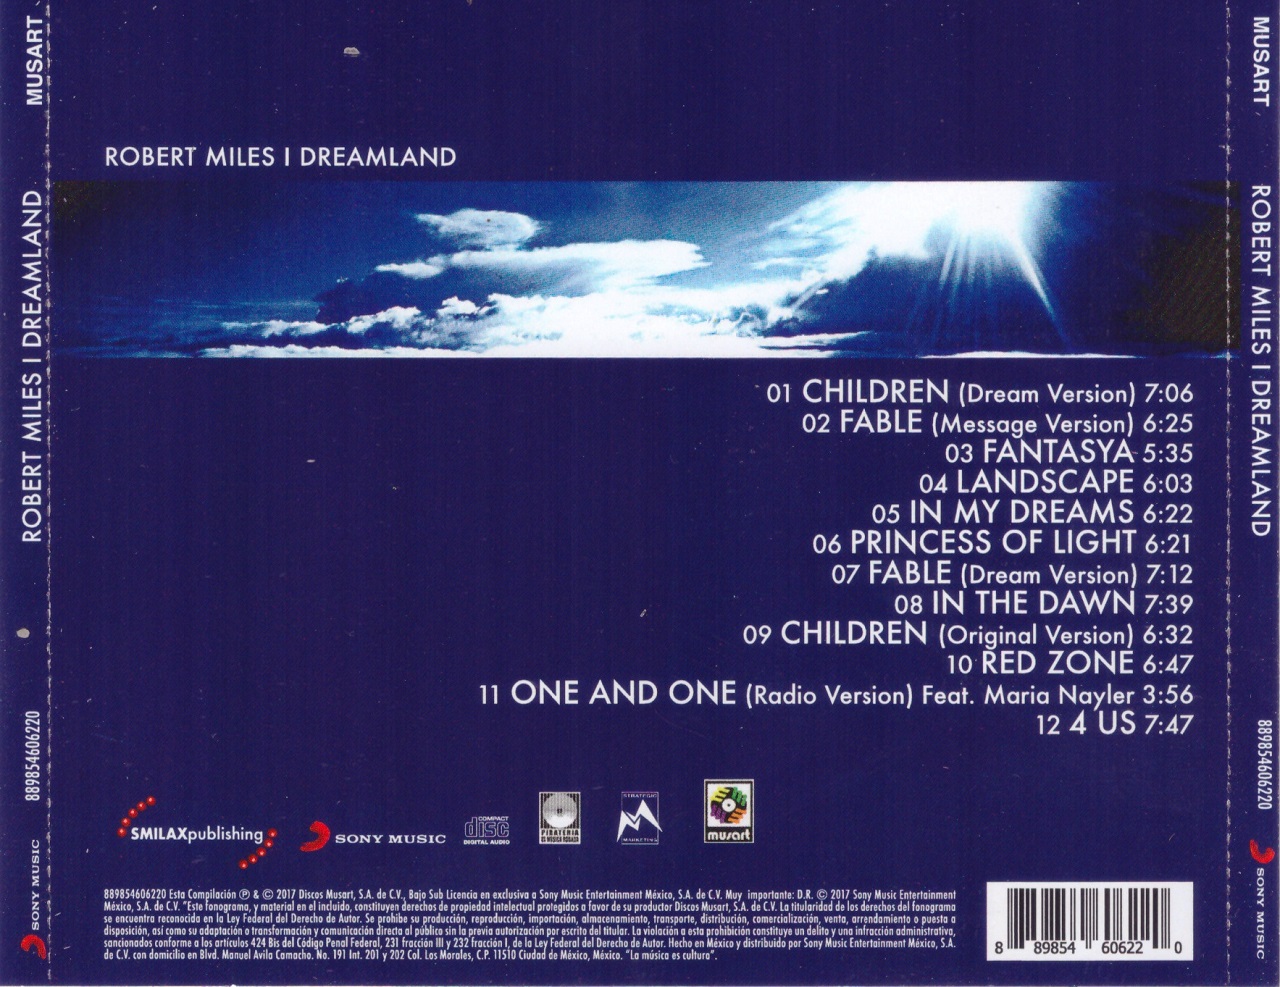 Robert miles dreaming. Robert Miles Dreamland 1996 обложка. Robert Miles Dreamland обложка CD. Robert Miles Dreamland album.